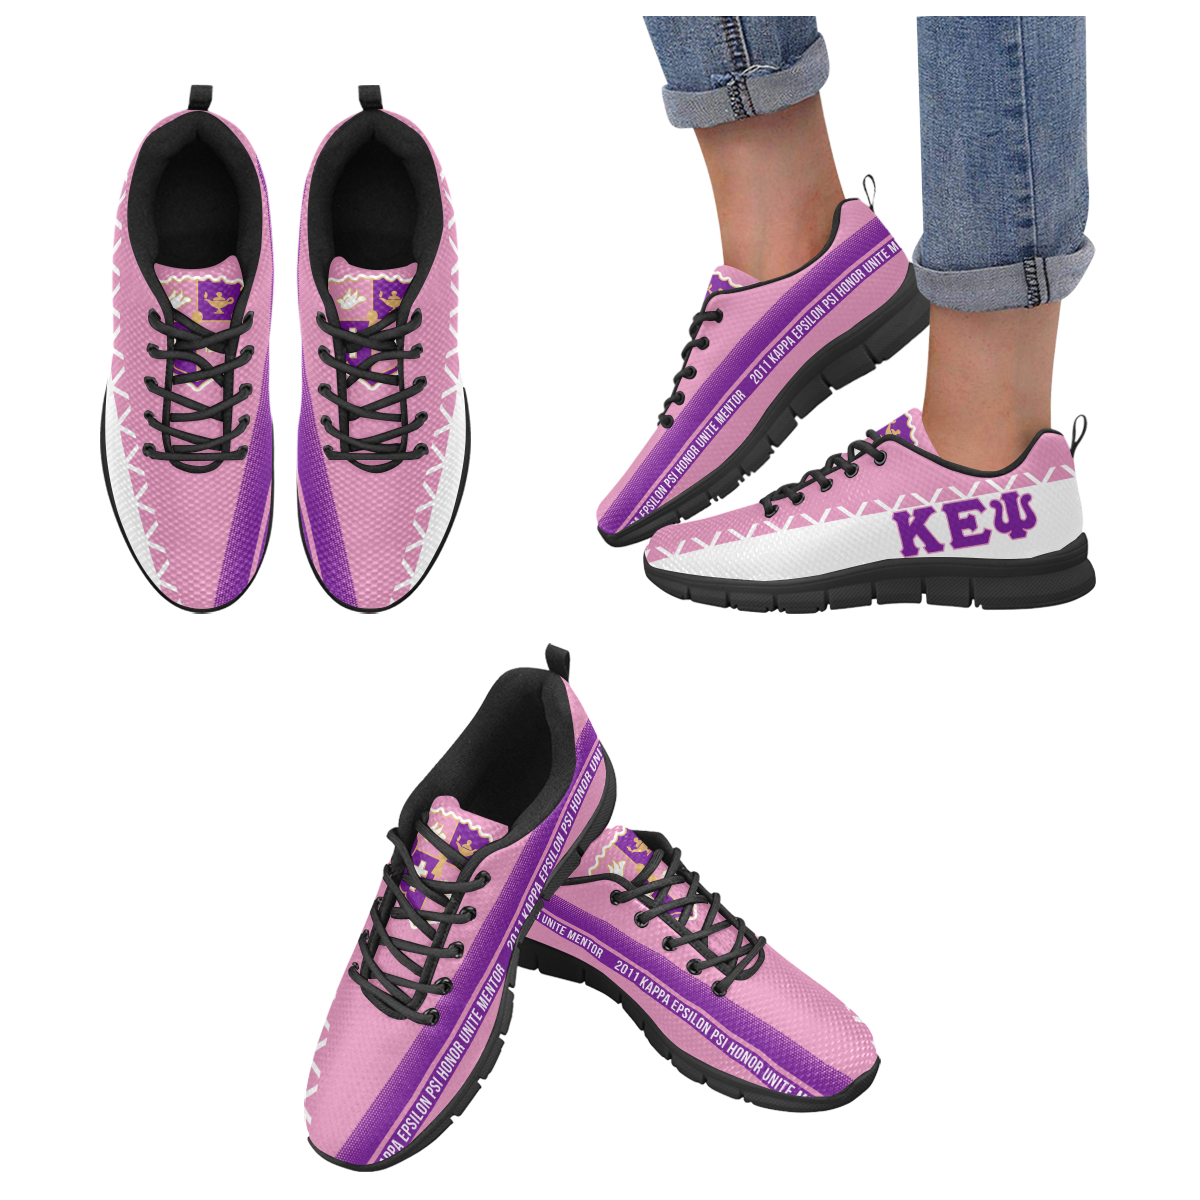 Women purple patterned sneakers with KEY branding.